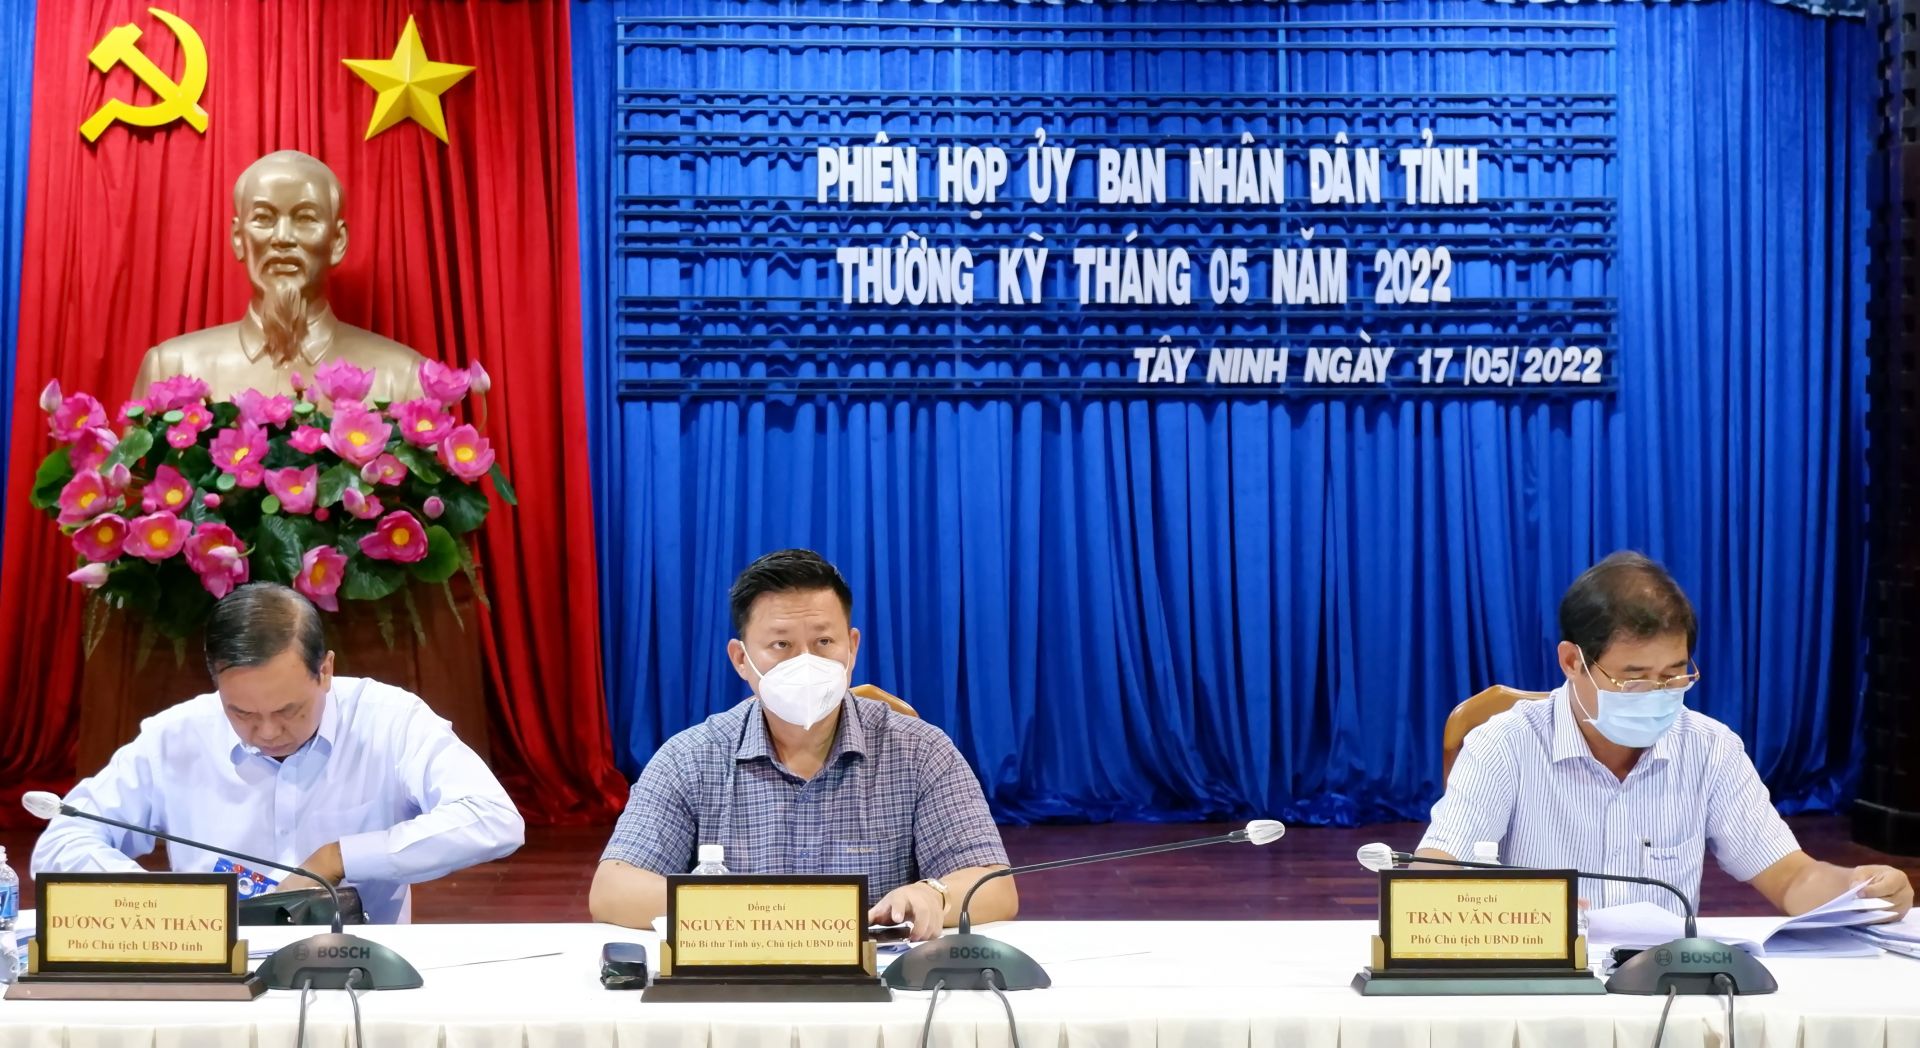 Điểm báo in Tây Ninh ngày 18.05.2022